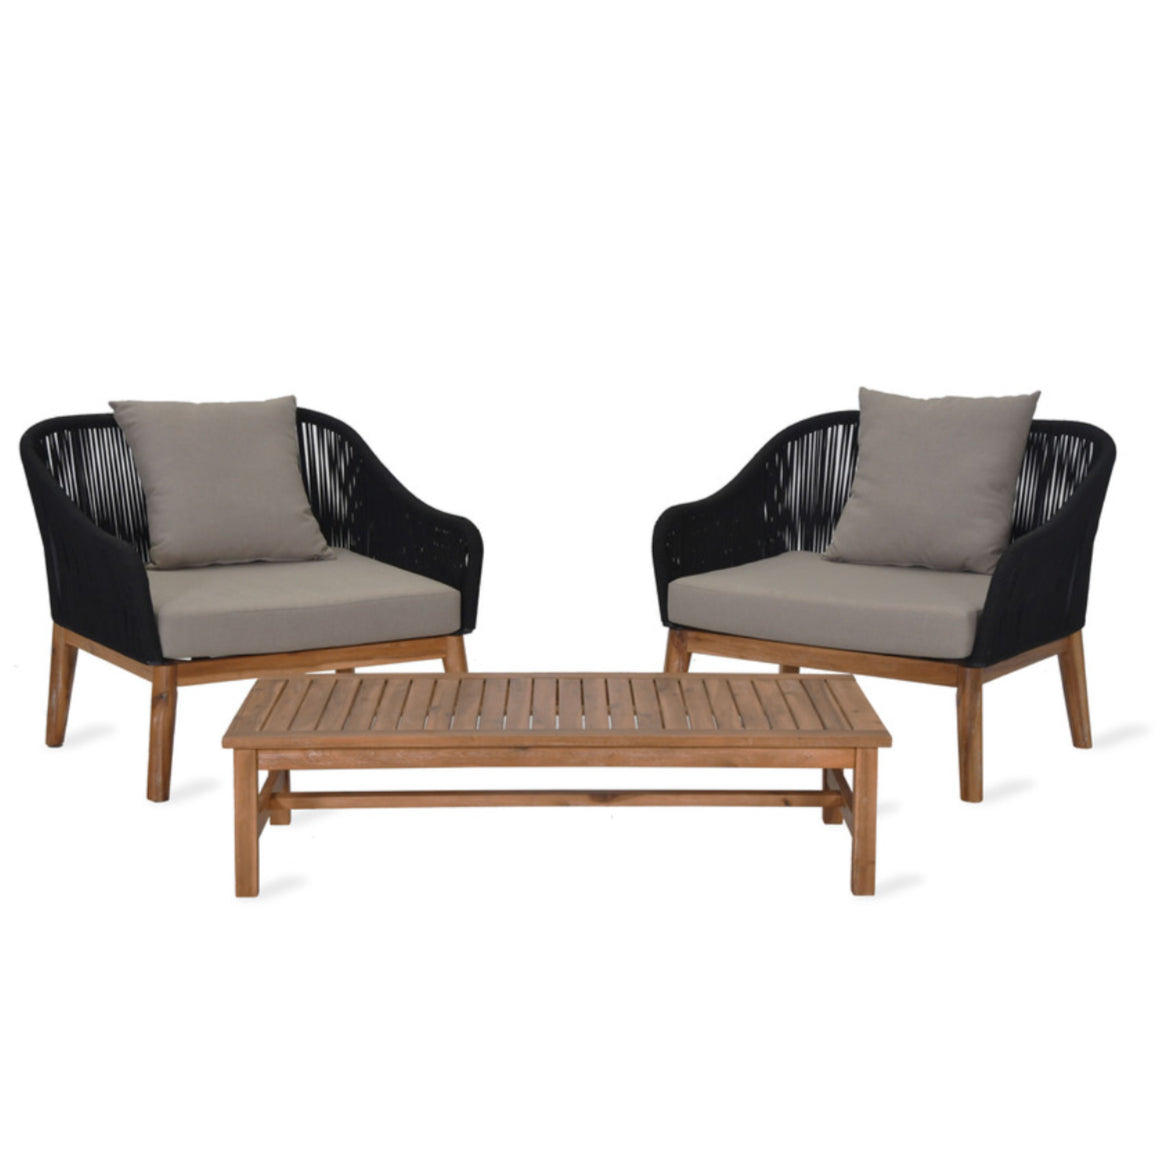 Luccombe armchair set outdoor acacia wood garden trading